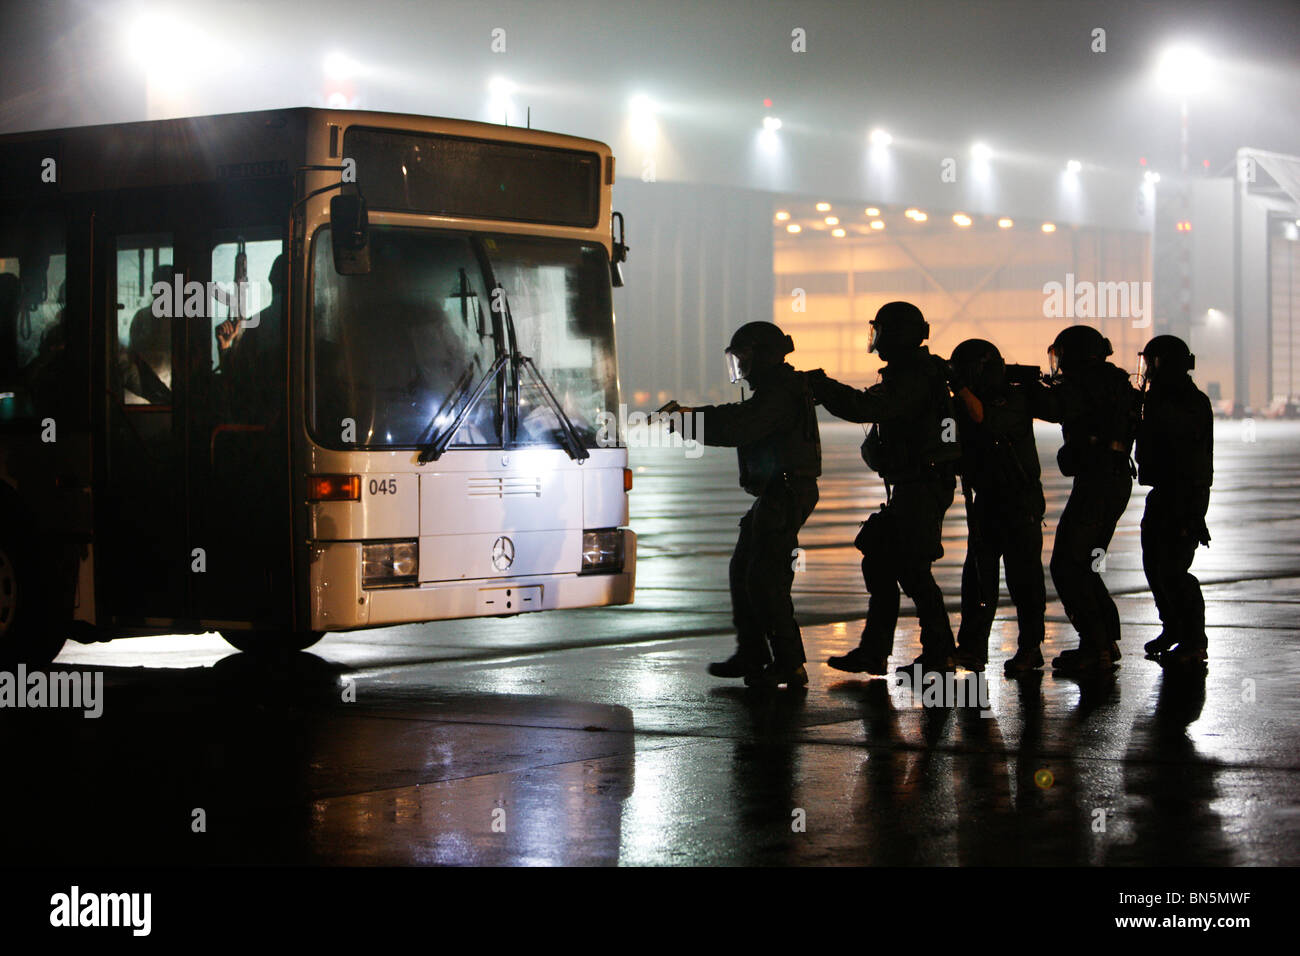 Polizei SWAT-Team bei einer Übung. Anti-Terrorismus und Kriminalität Einheit zwingt die Spezialeinheiten der Polizei. Stockfoto